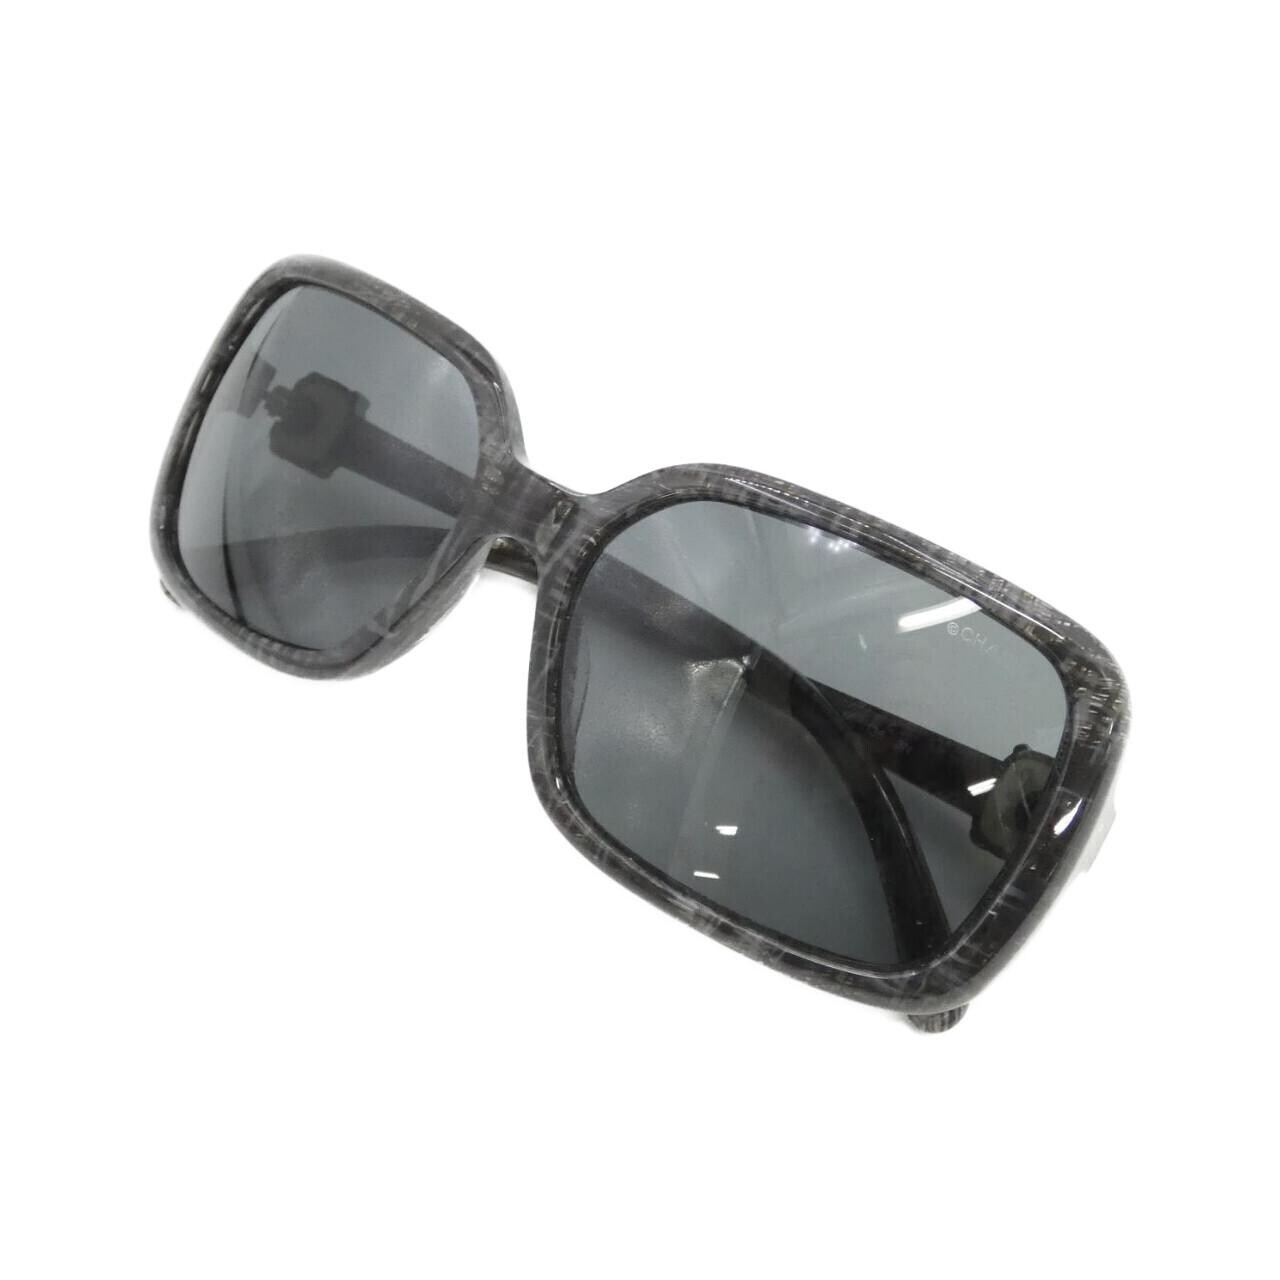 CHANEL 5175 A sunglasses